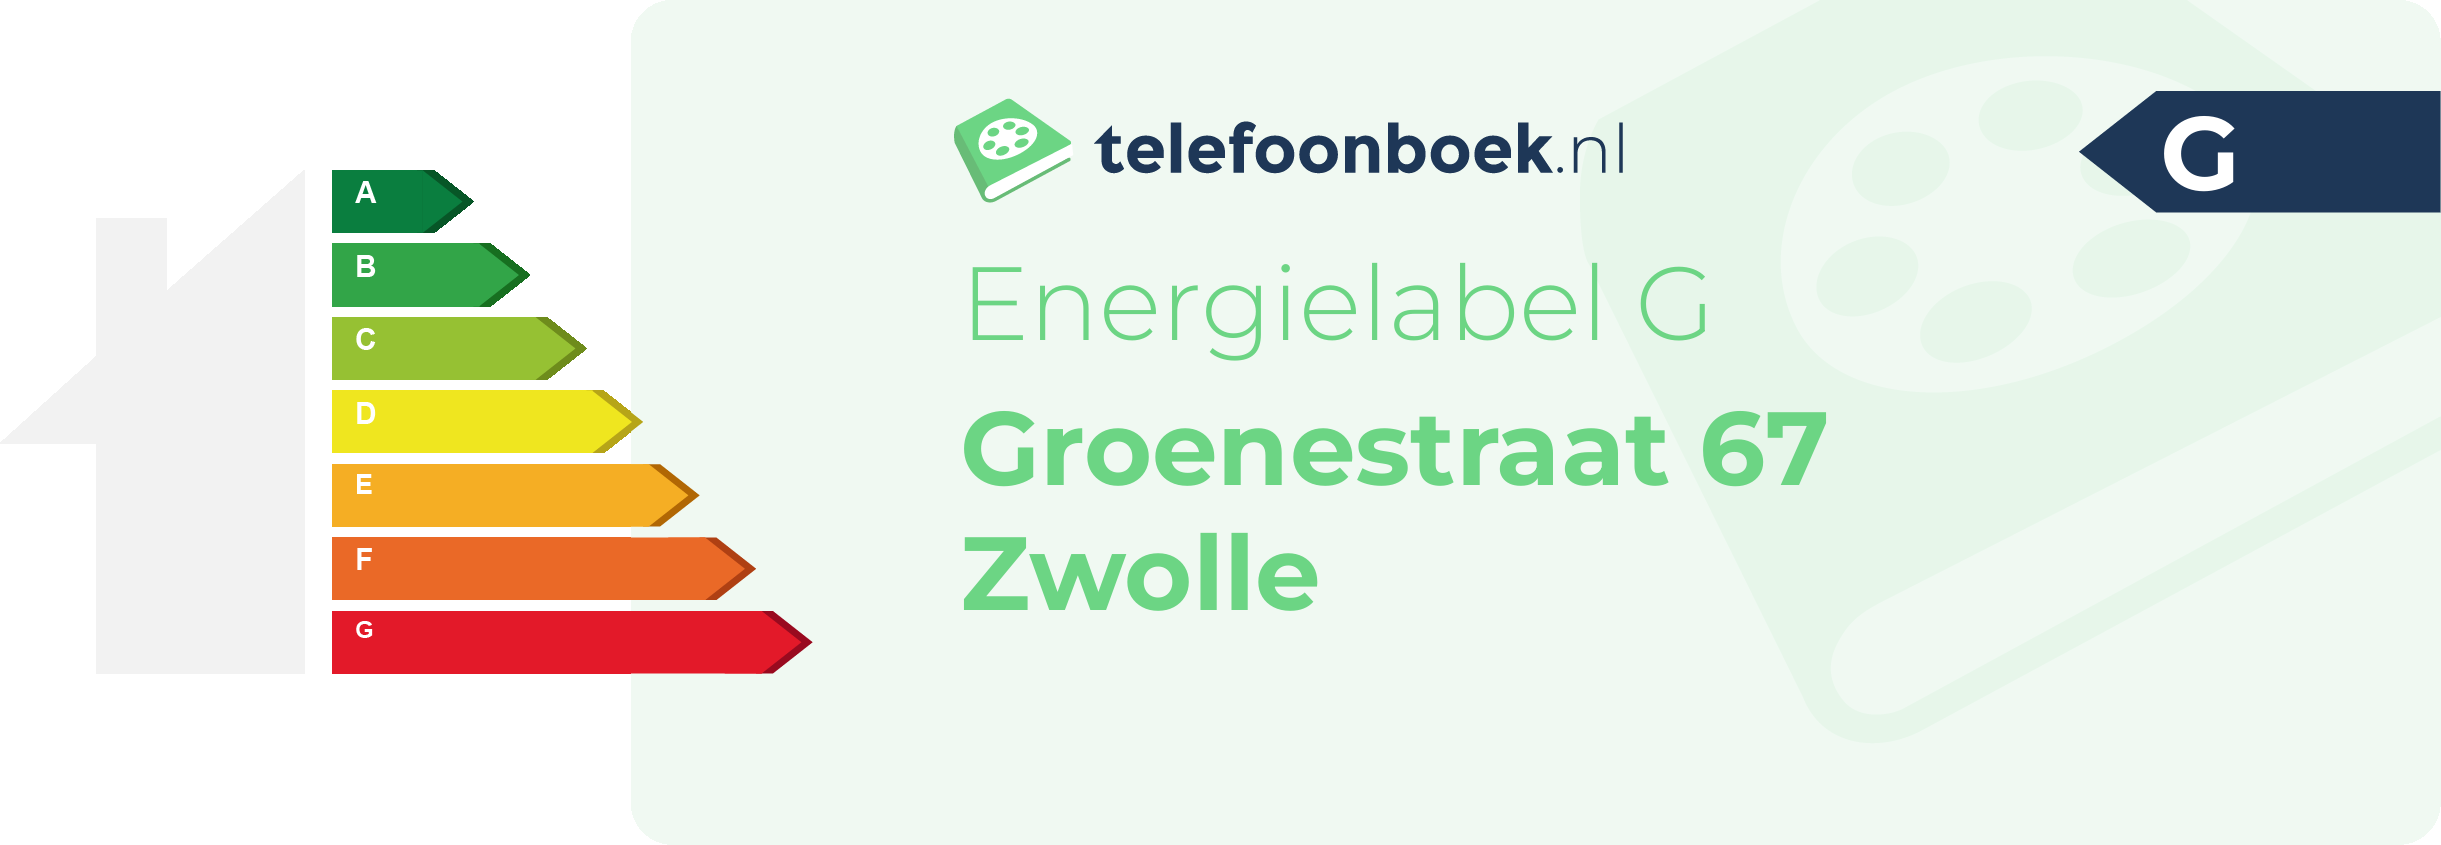 Energielabel Groenestraat 67 Zwolle